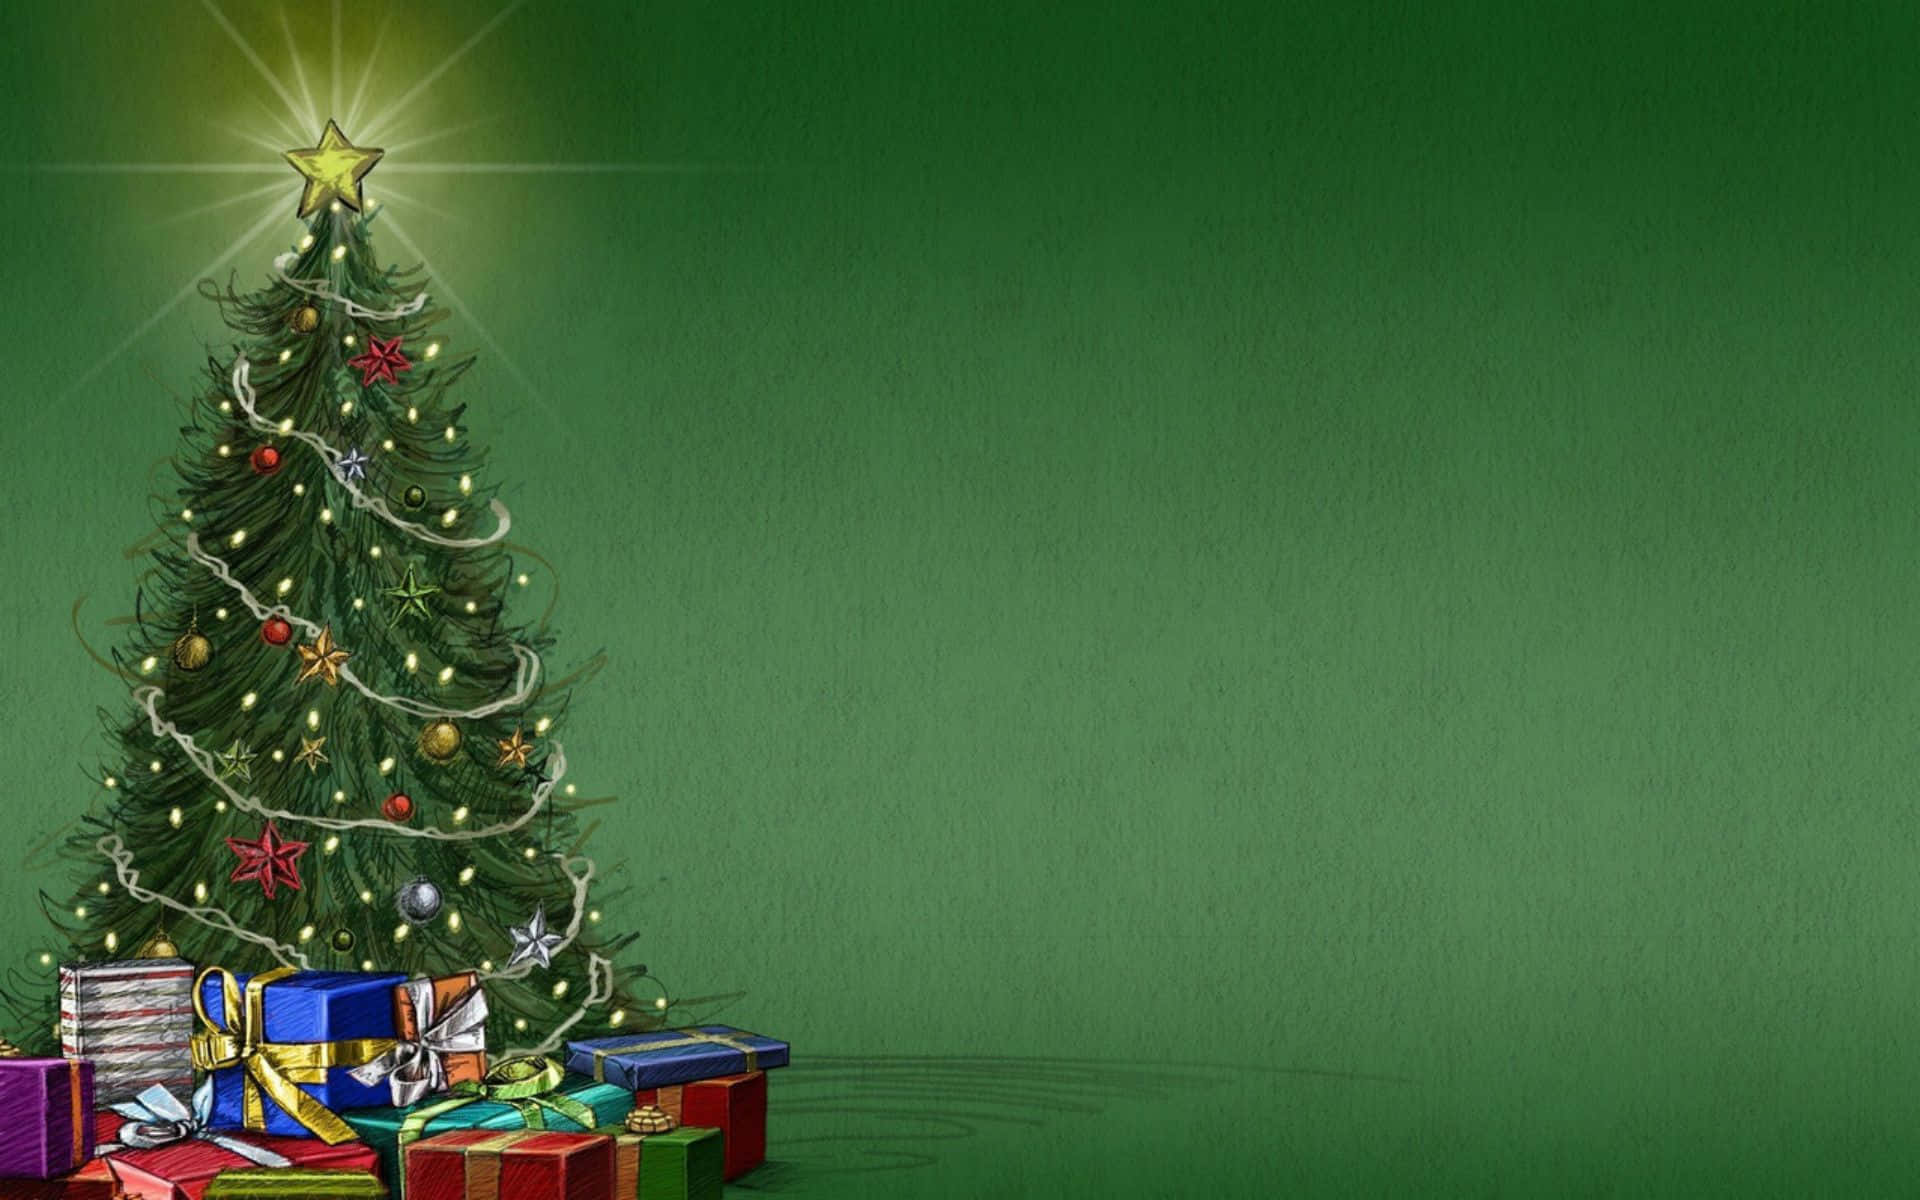 Árvorede Natal Com Presentes Em Um Fundo Verde. Papel de Parede